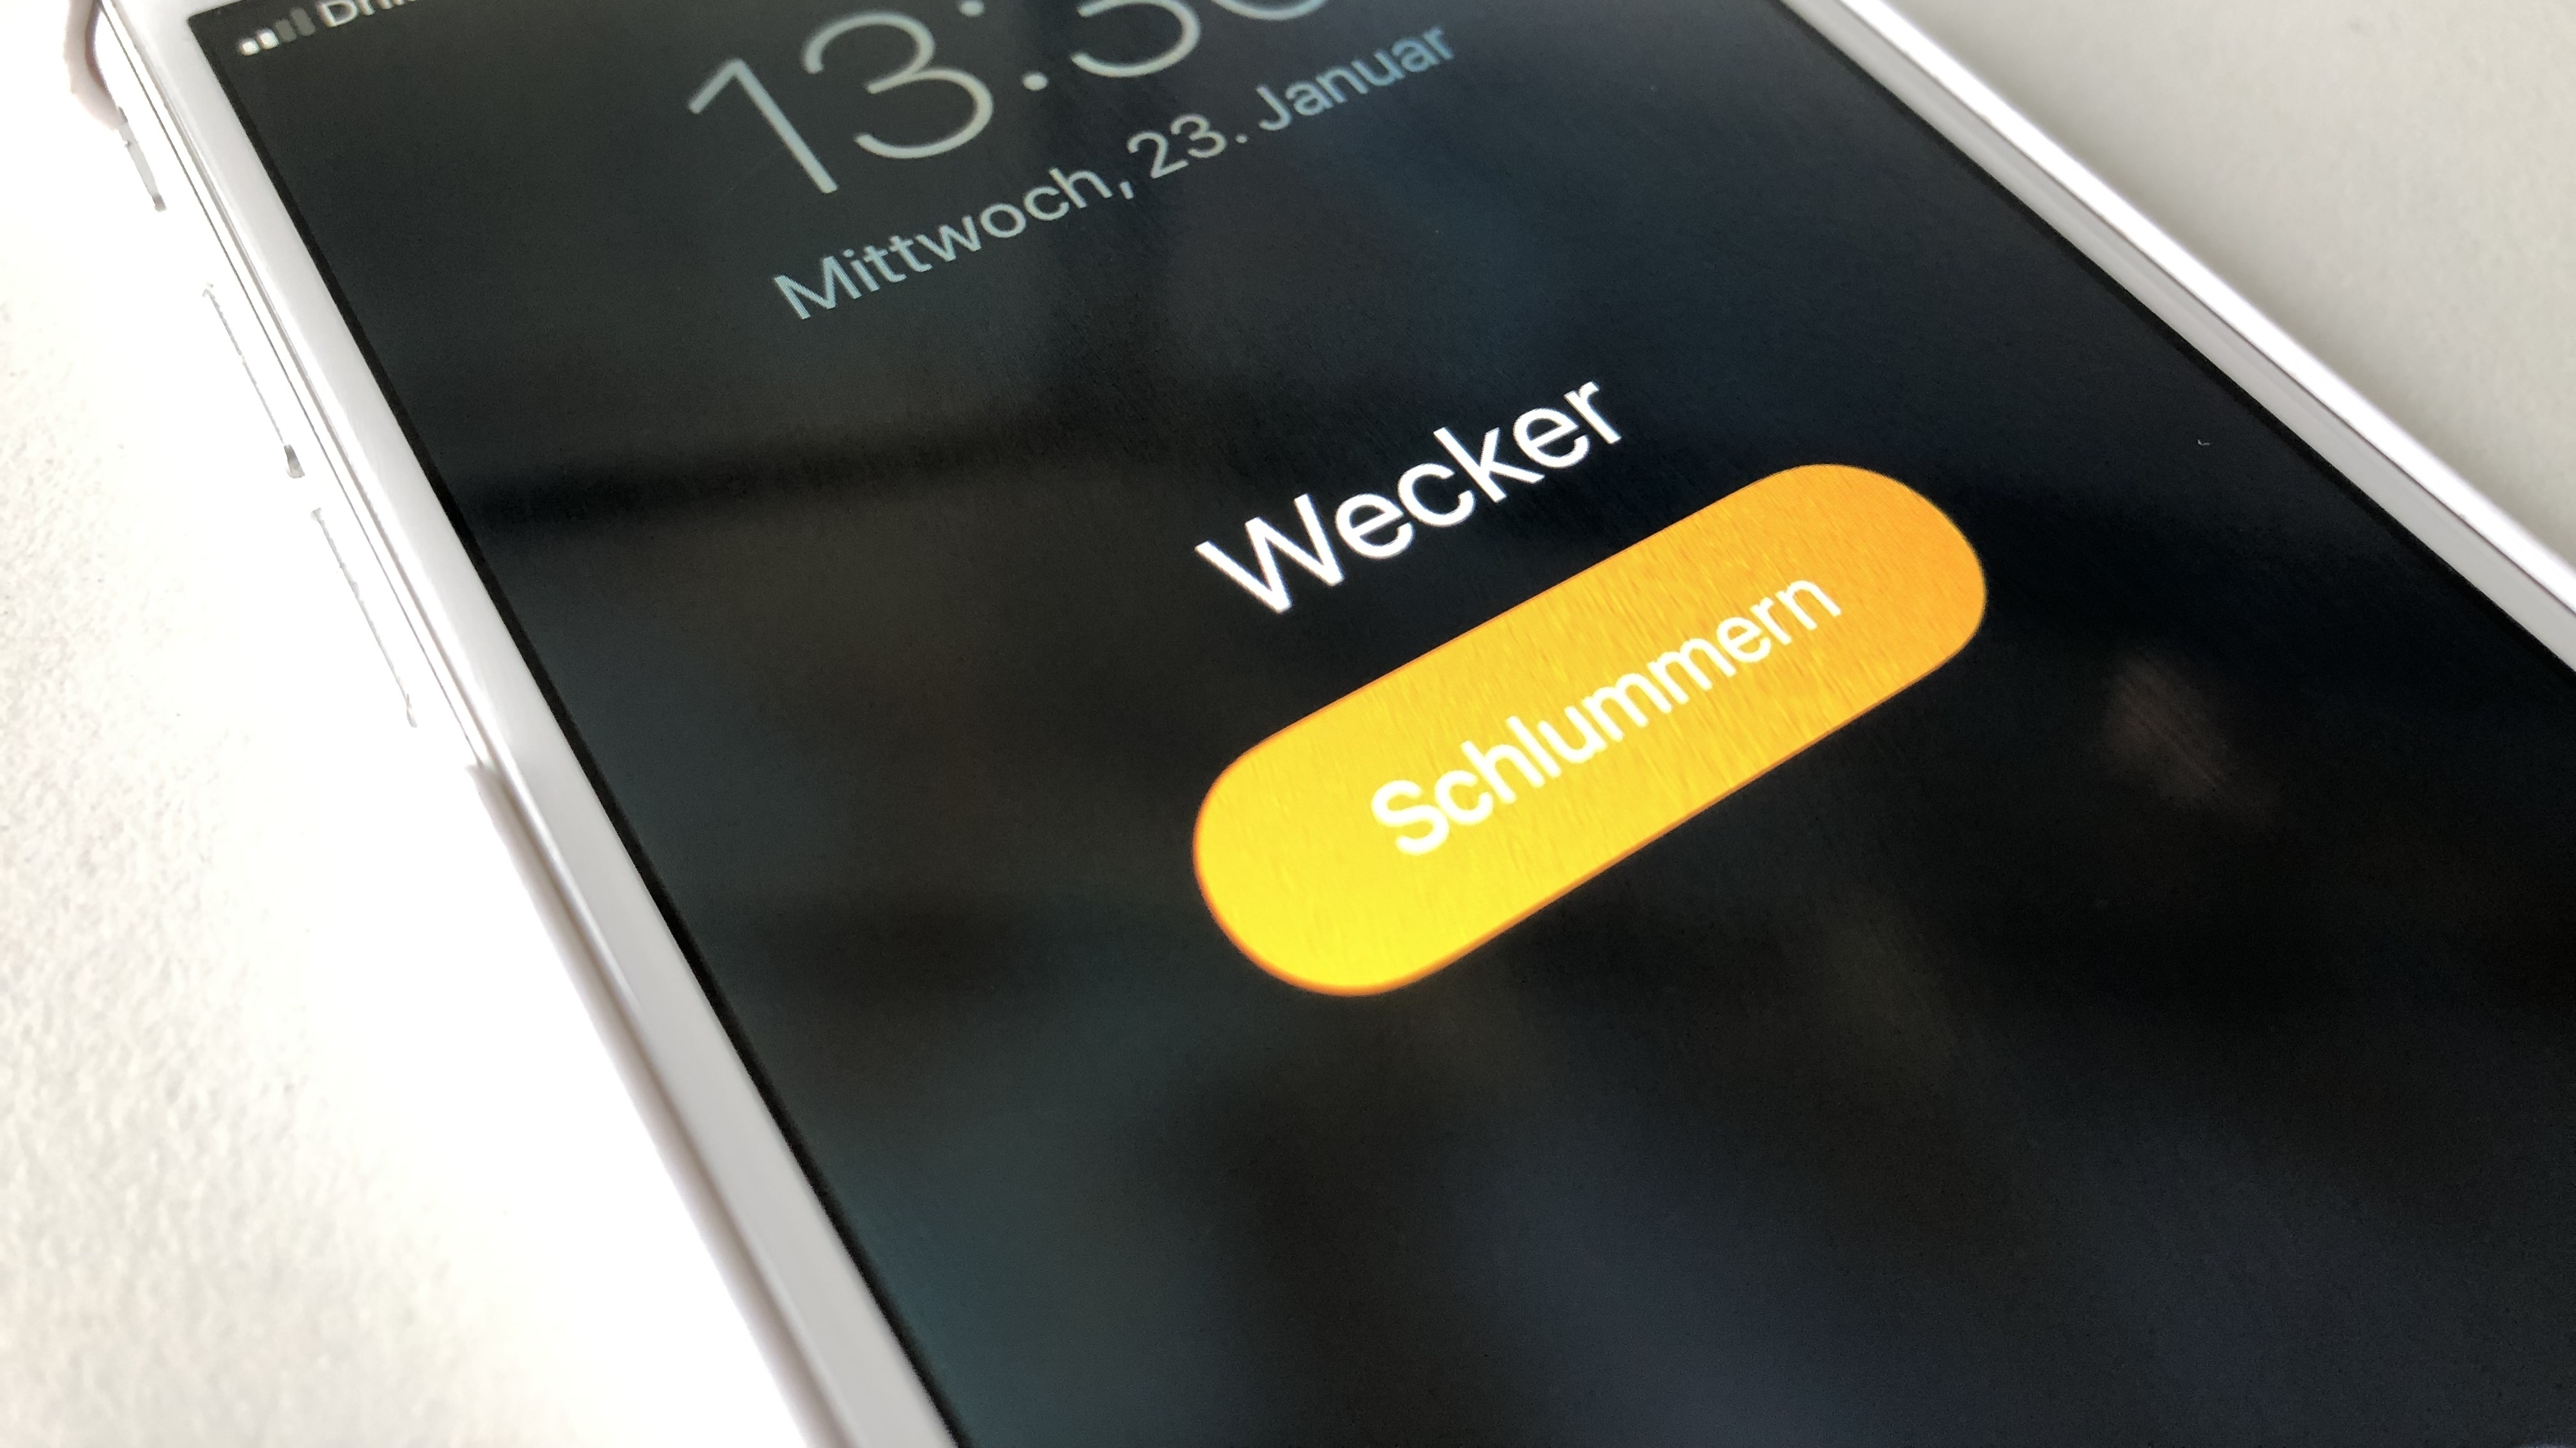 iPhone: Wecker-Lautstärke einstellen - so wird's gemacht | heise online